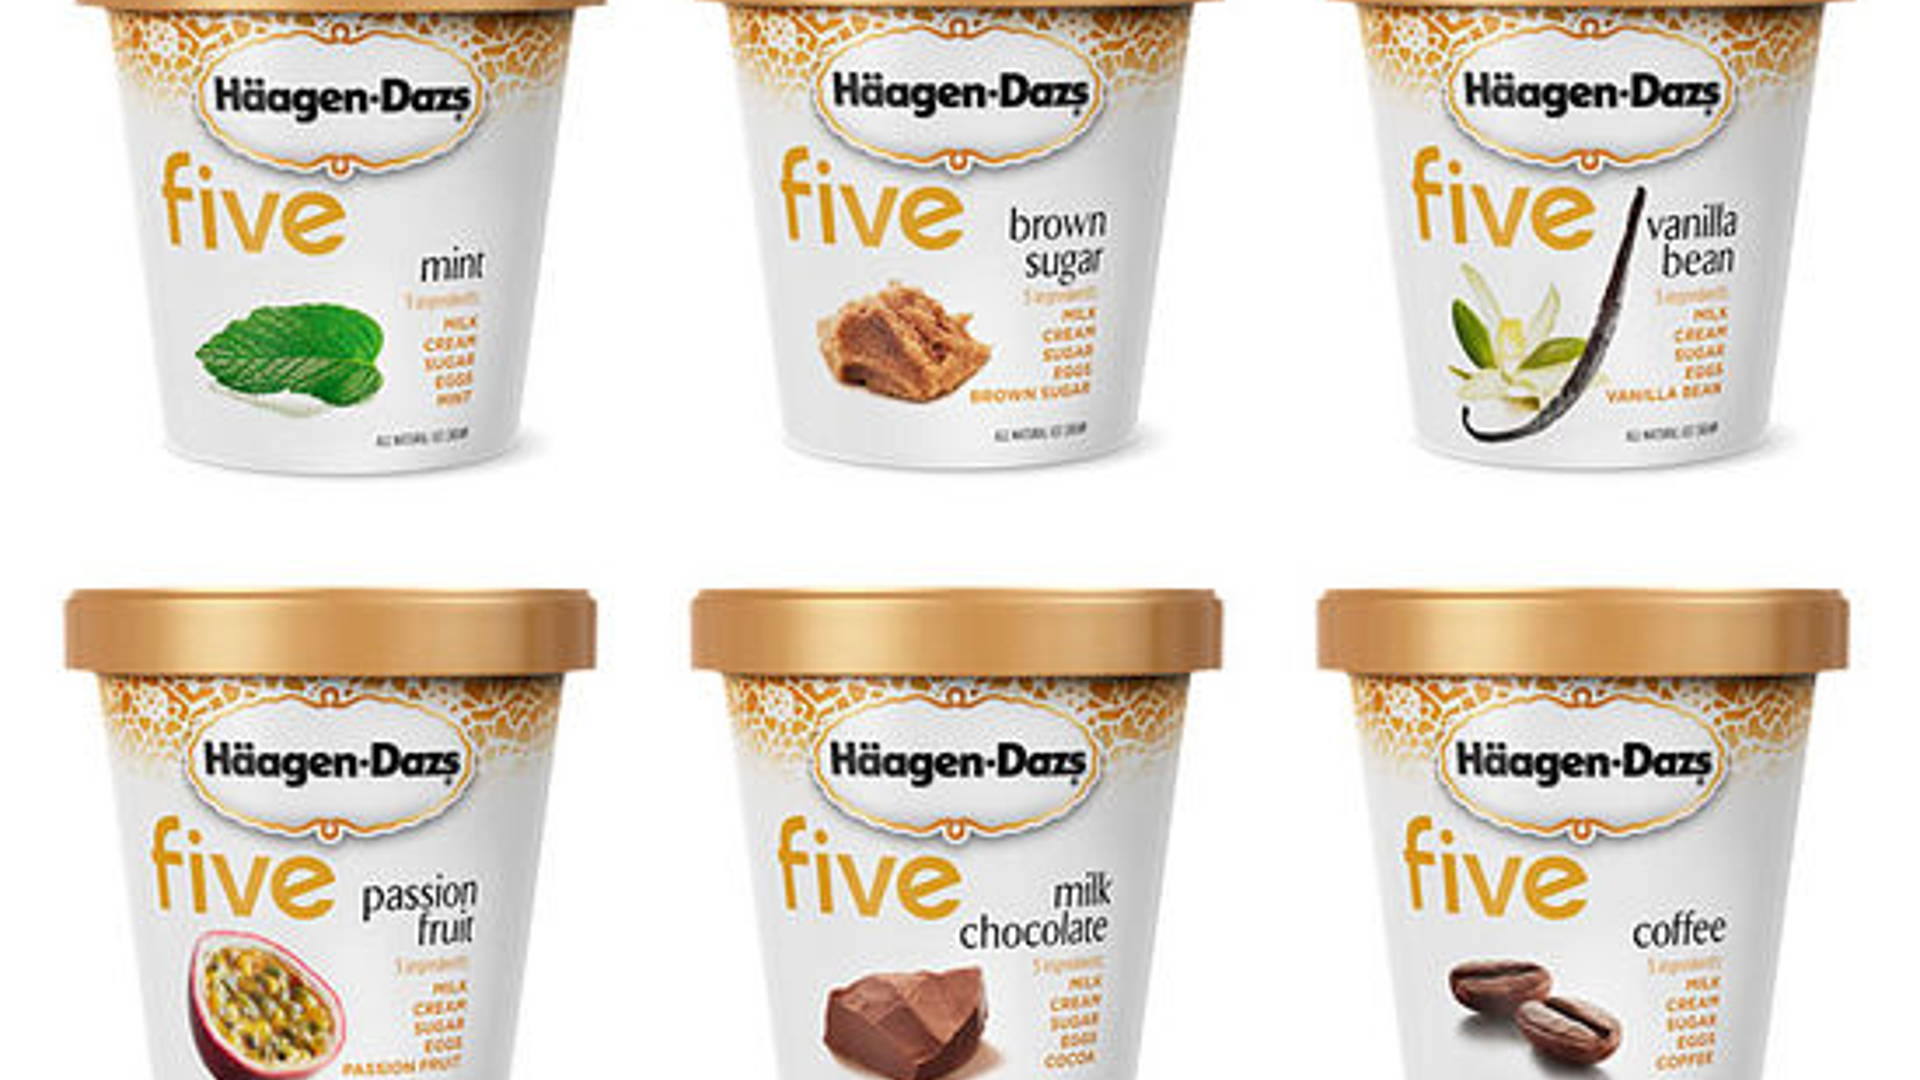 Häagen-Dazs five™ Ice Cream Inspiration & Packaging Design, - Branding Dieline 